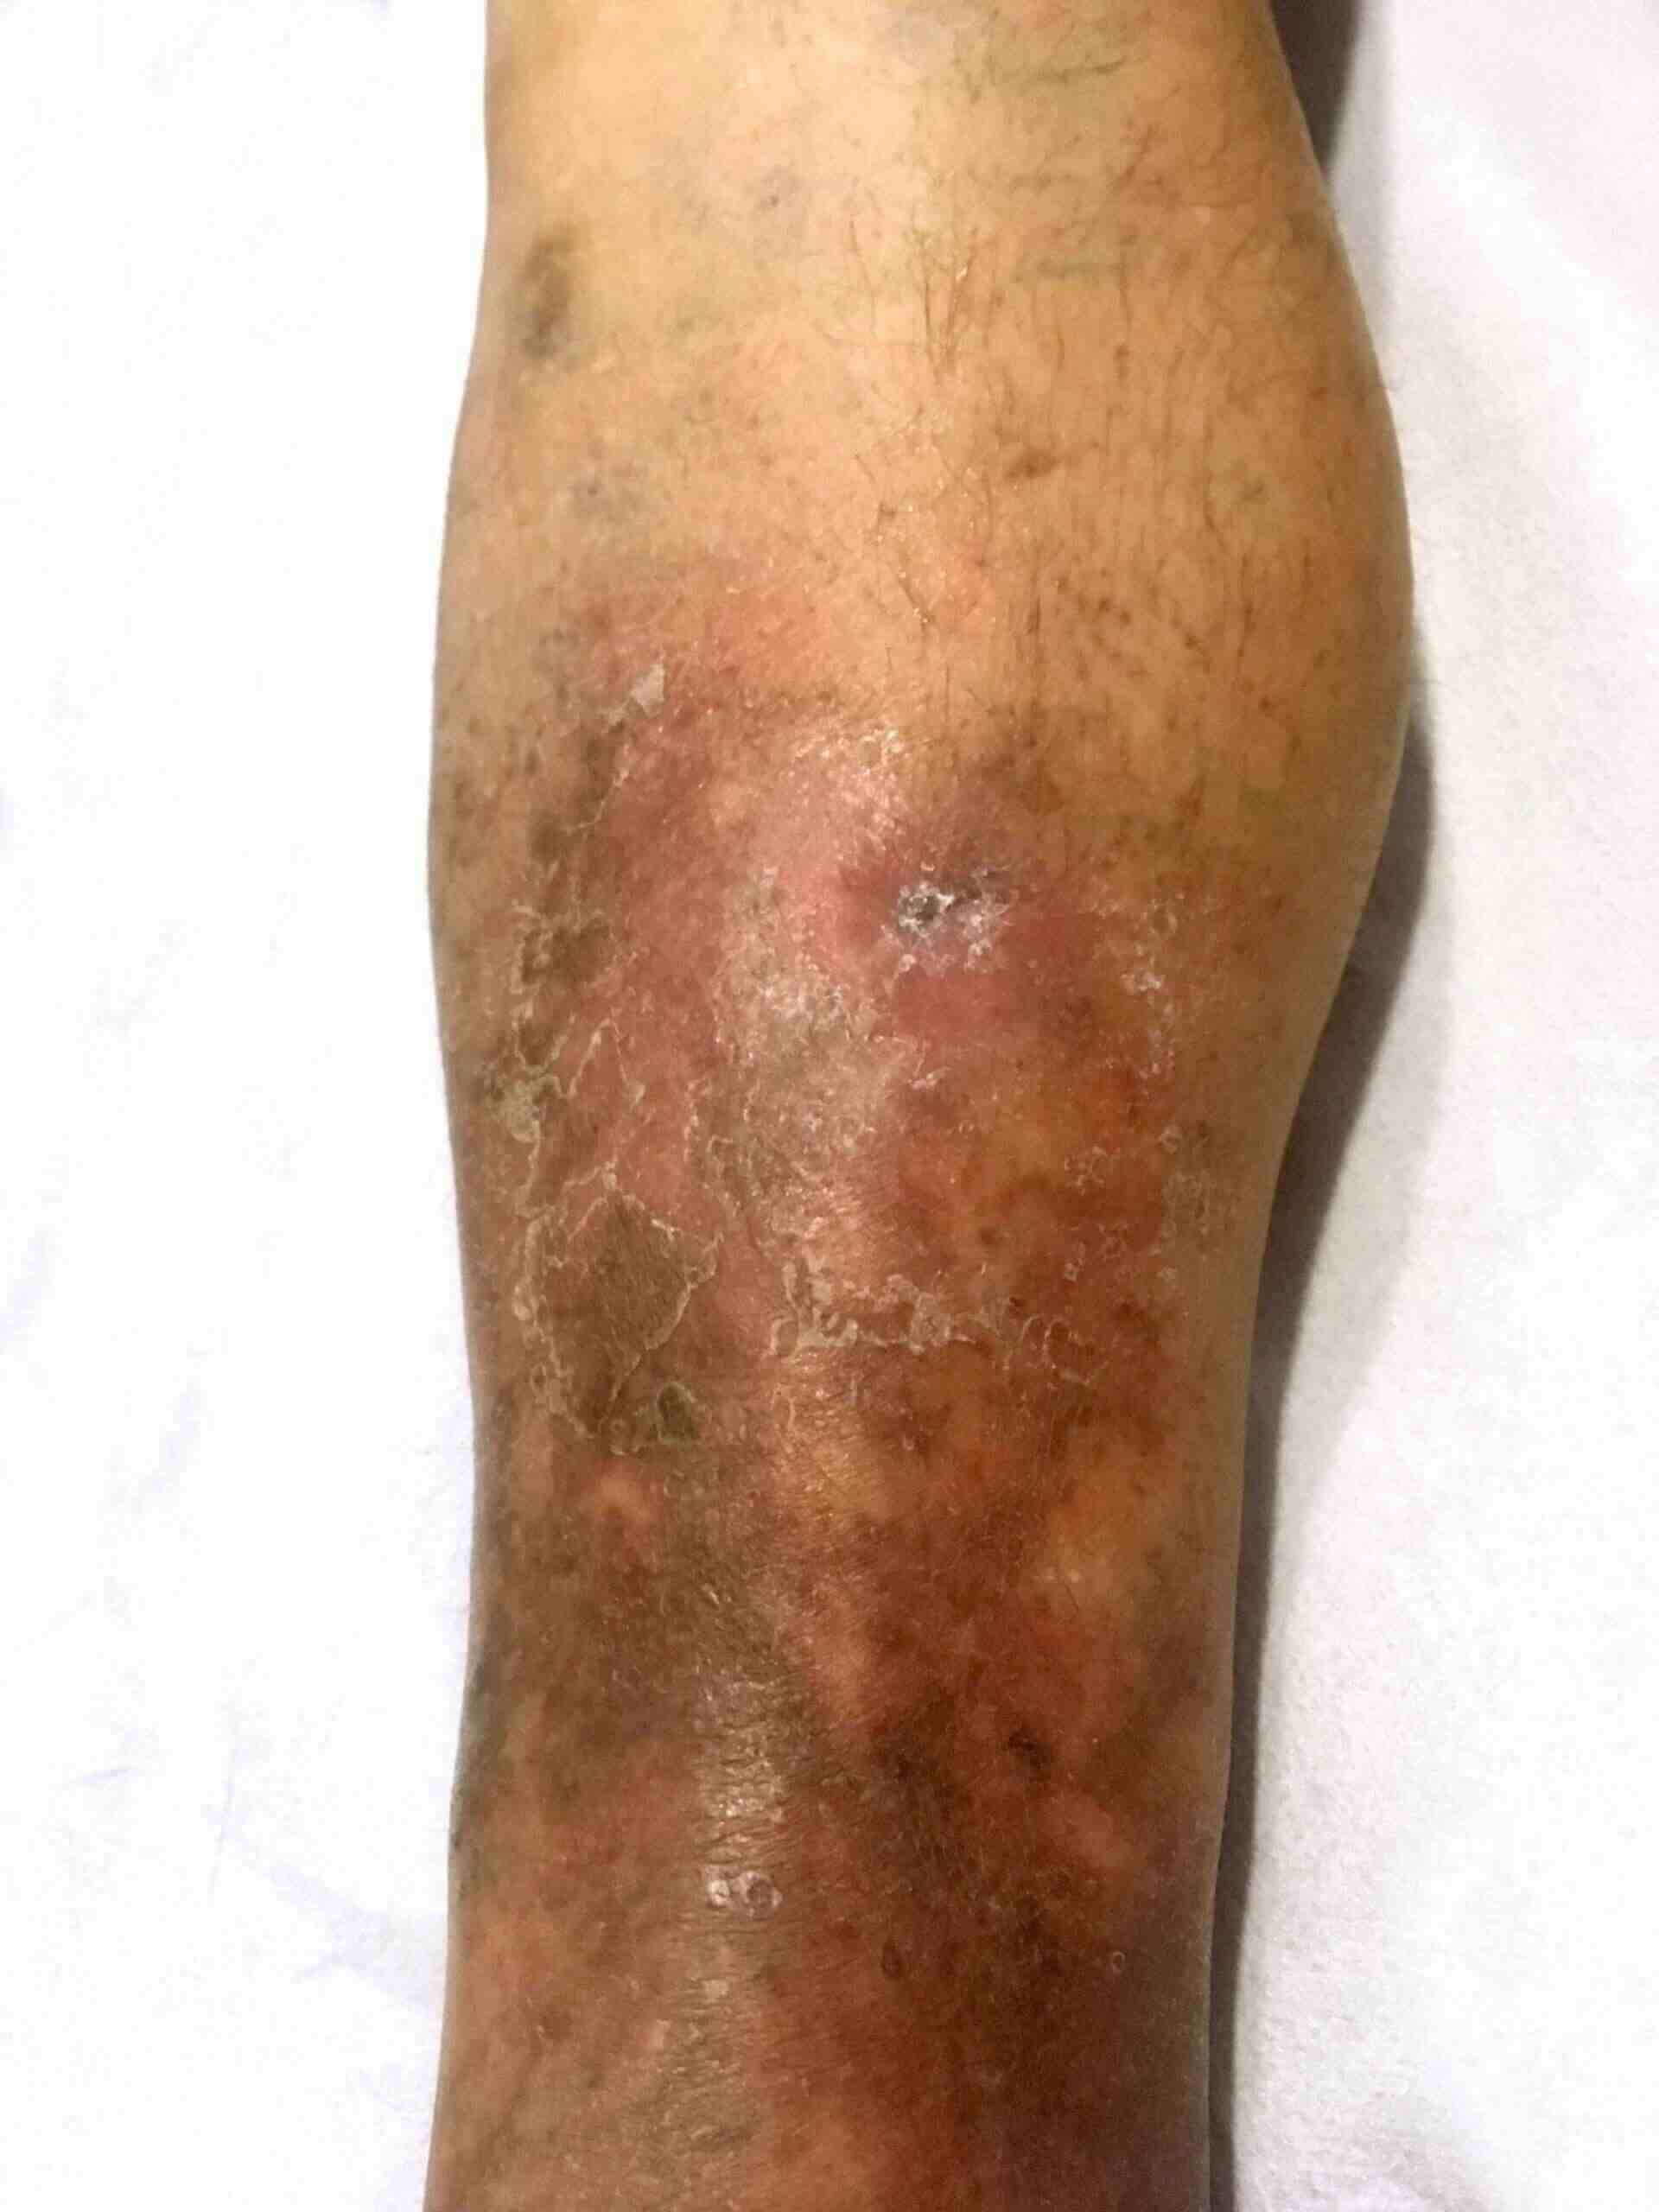 Tratament pentru eczema varicoasă, Eczema pe picioare în tratamentul venelor varicoase